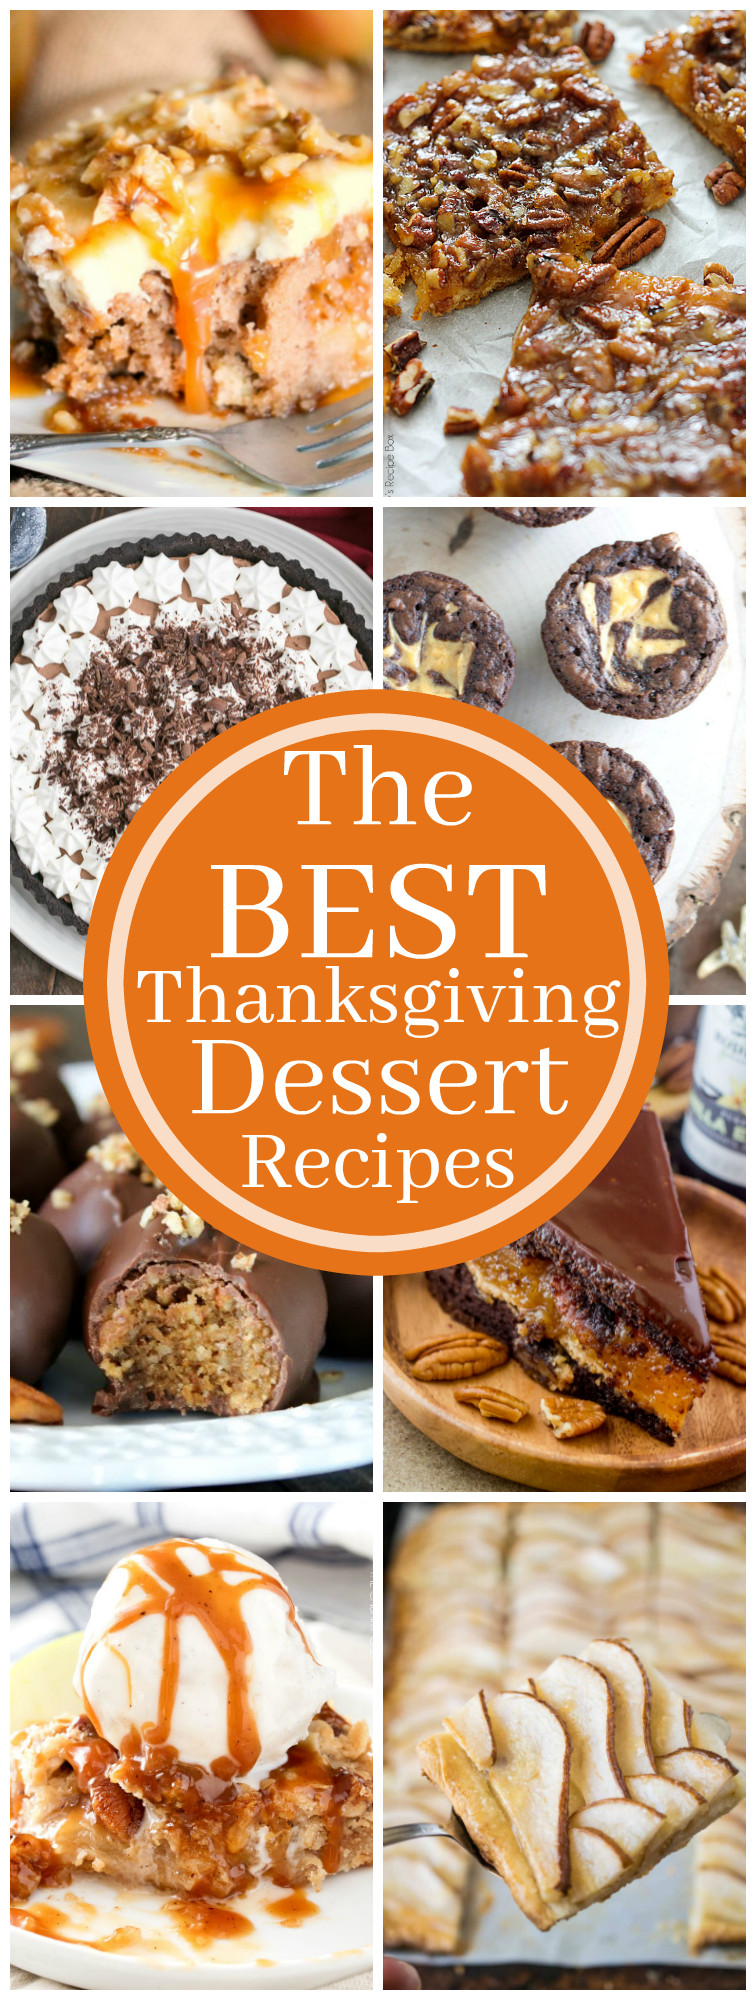 Pinterest Thanksgiving Desserts
 Best Thanksgiving Dessert Recipes Kleinworth & Co